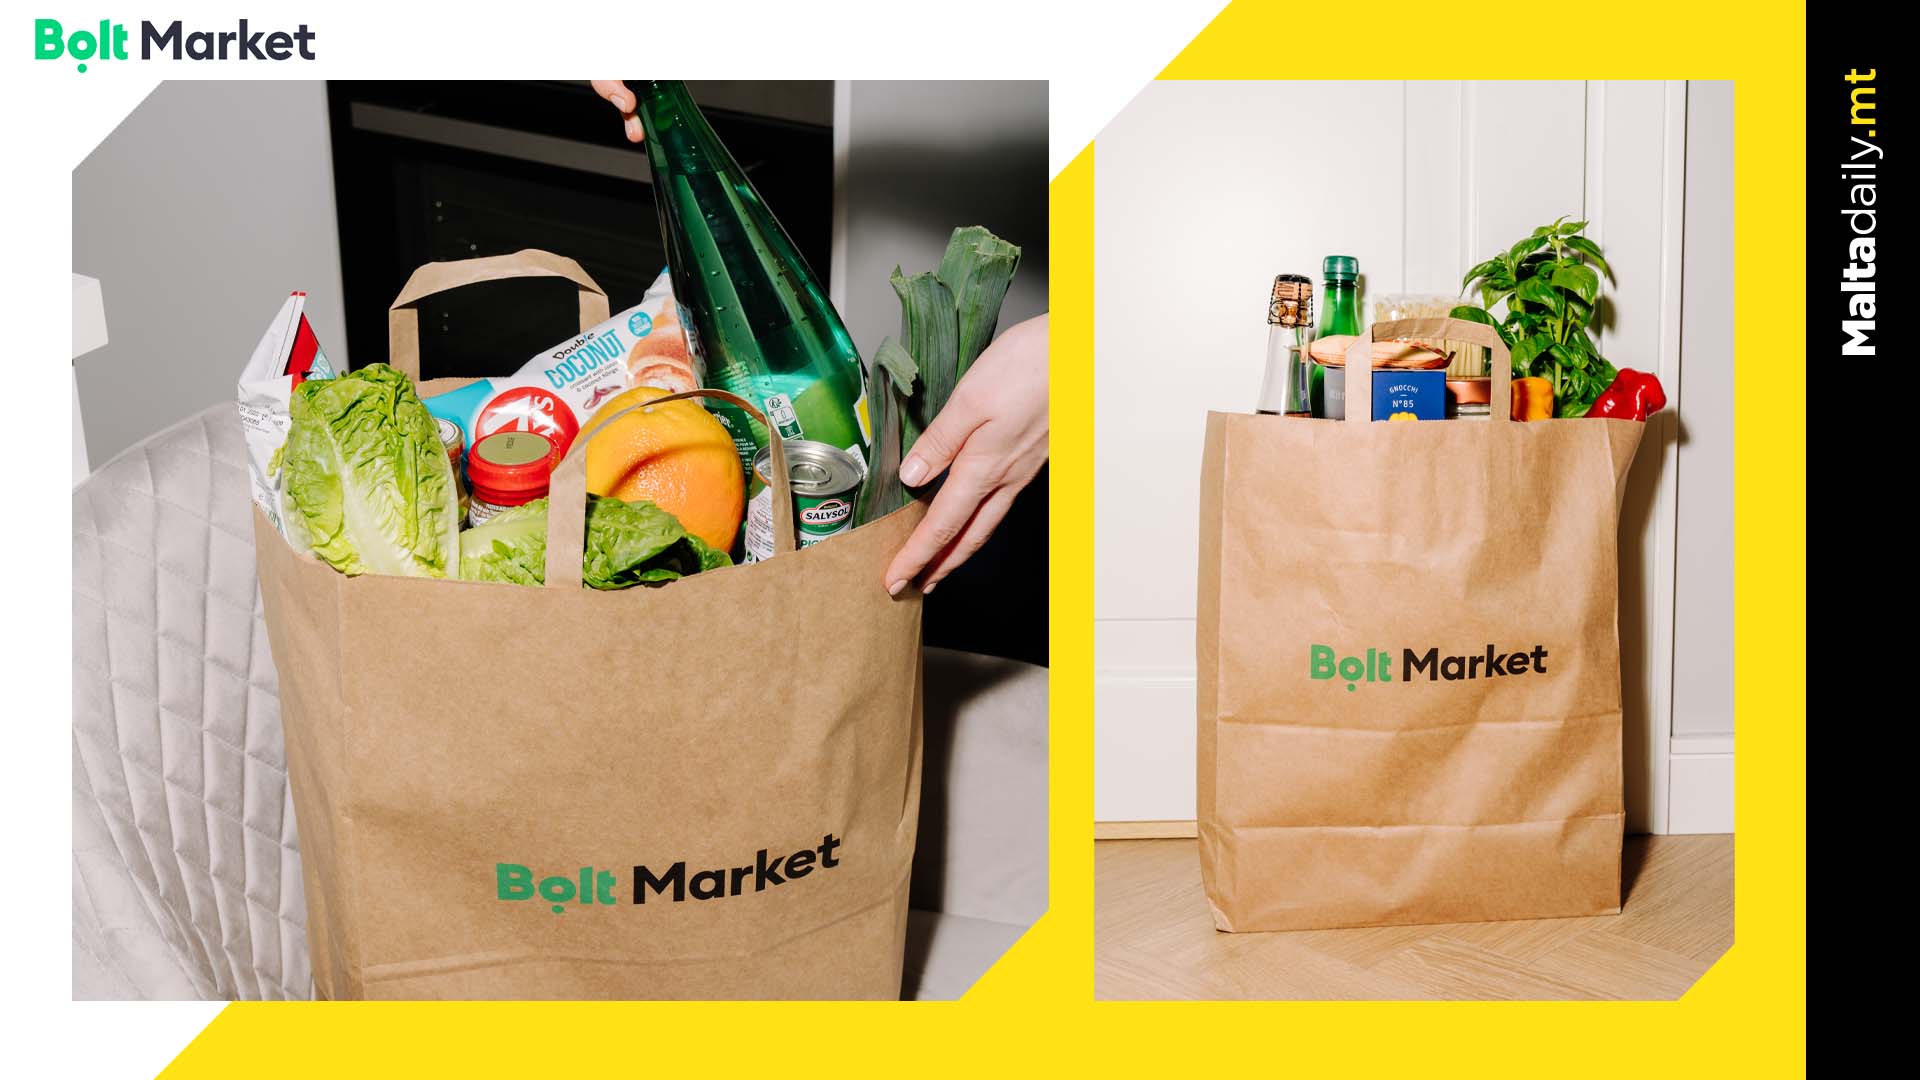 Bolt Market Is Your New Neighbourhood Store